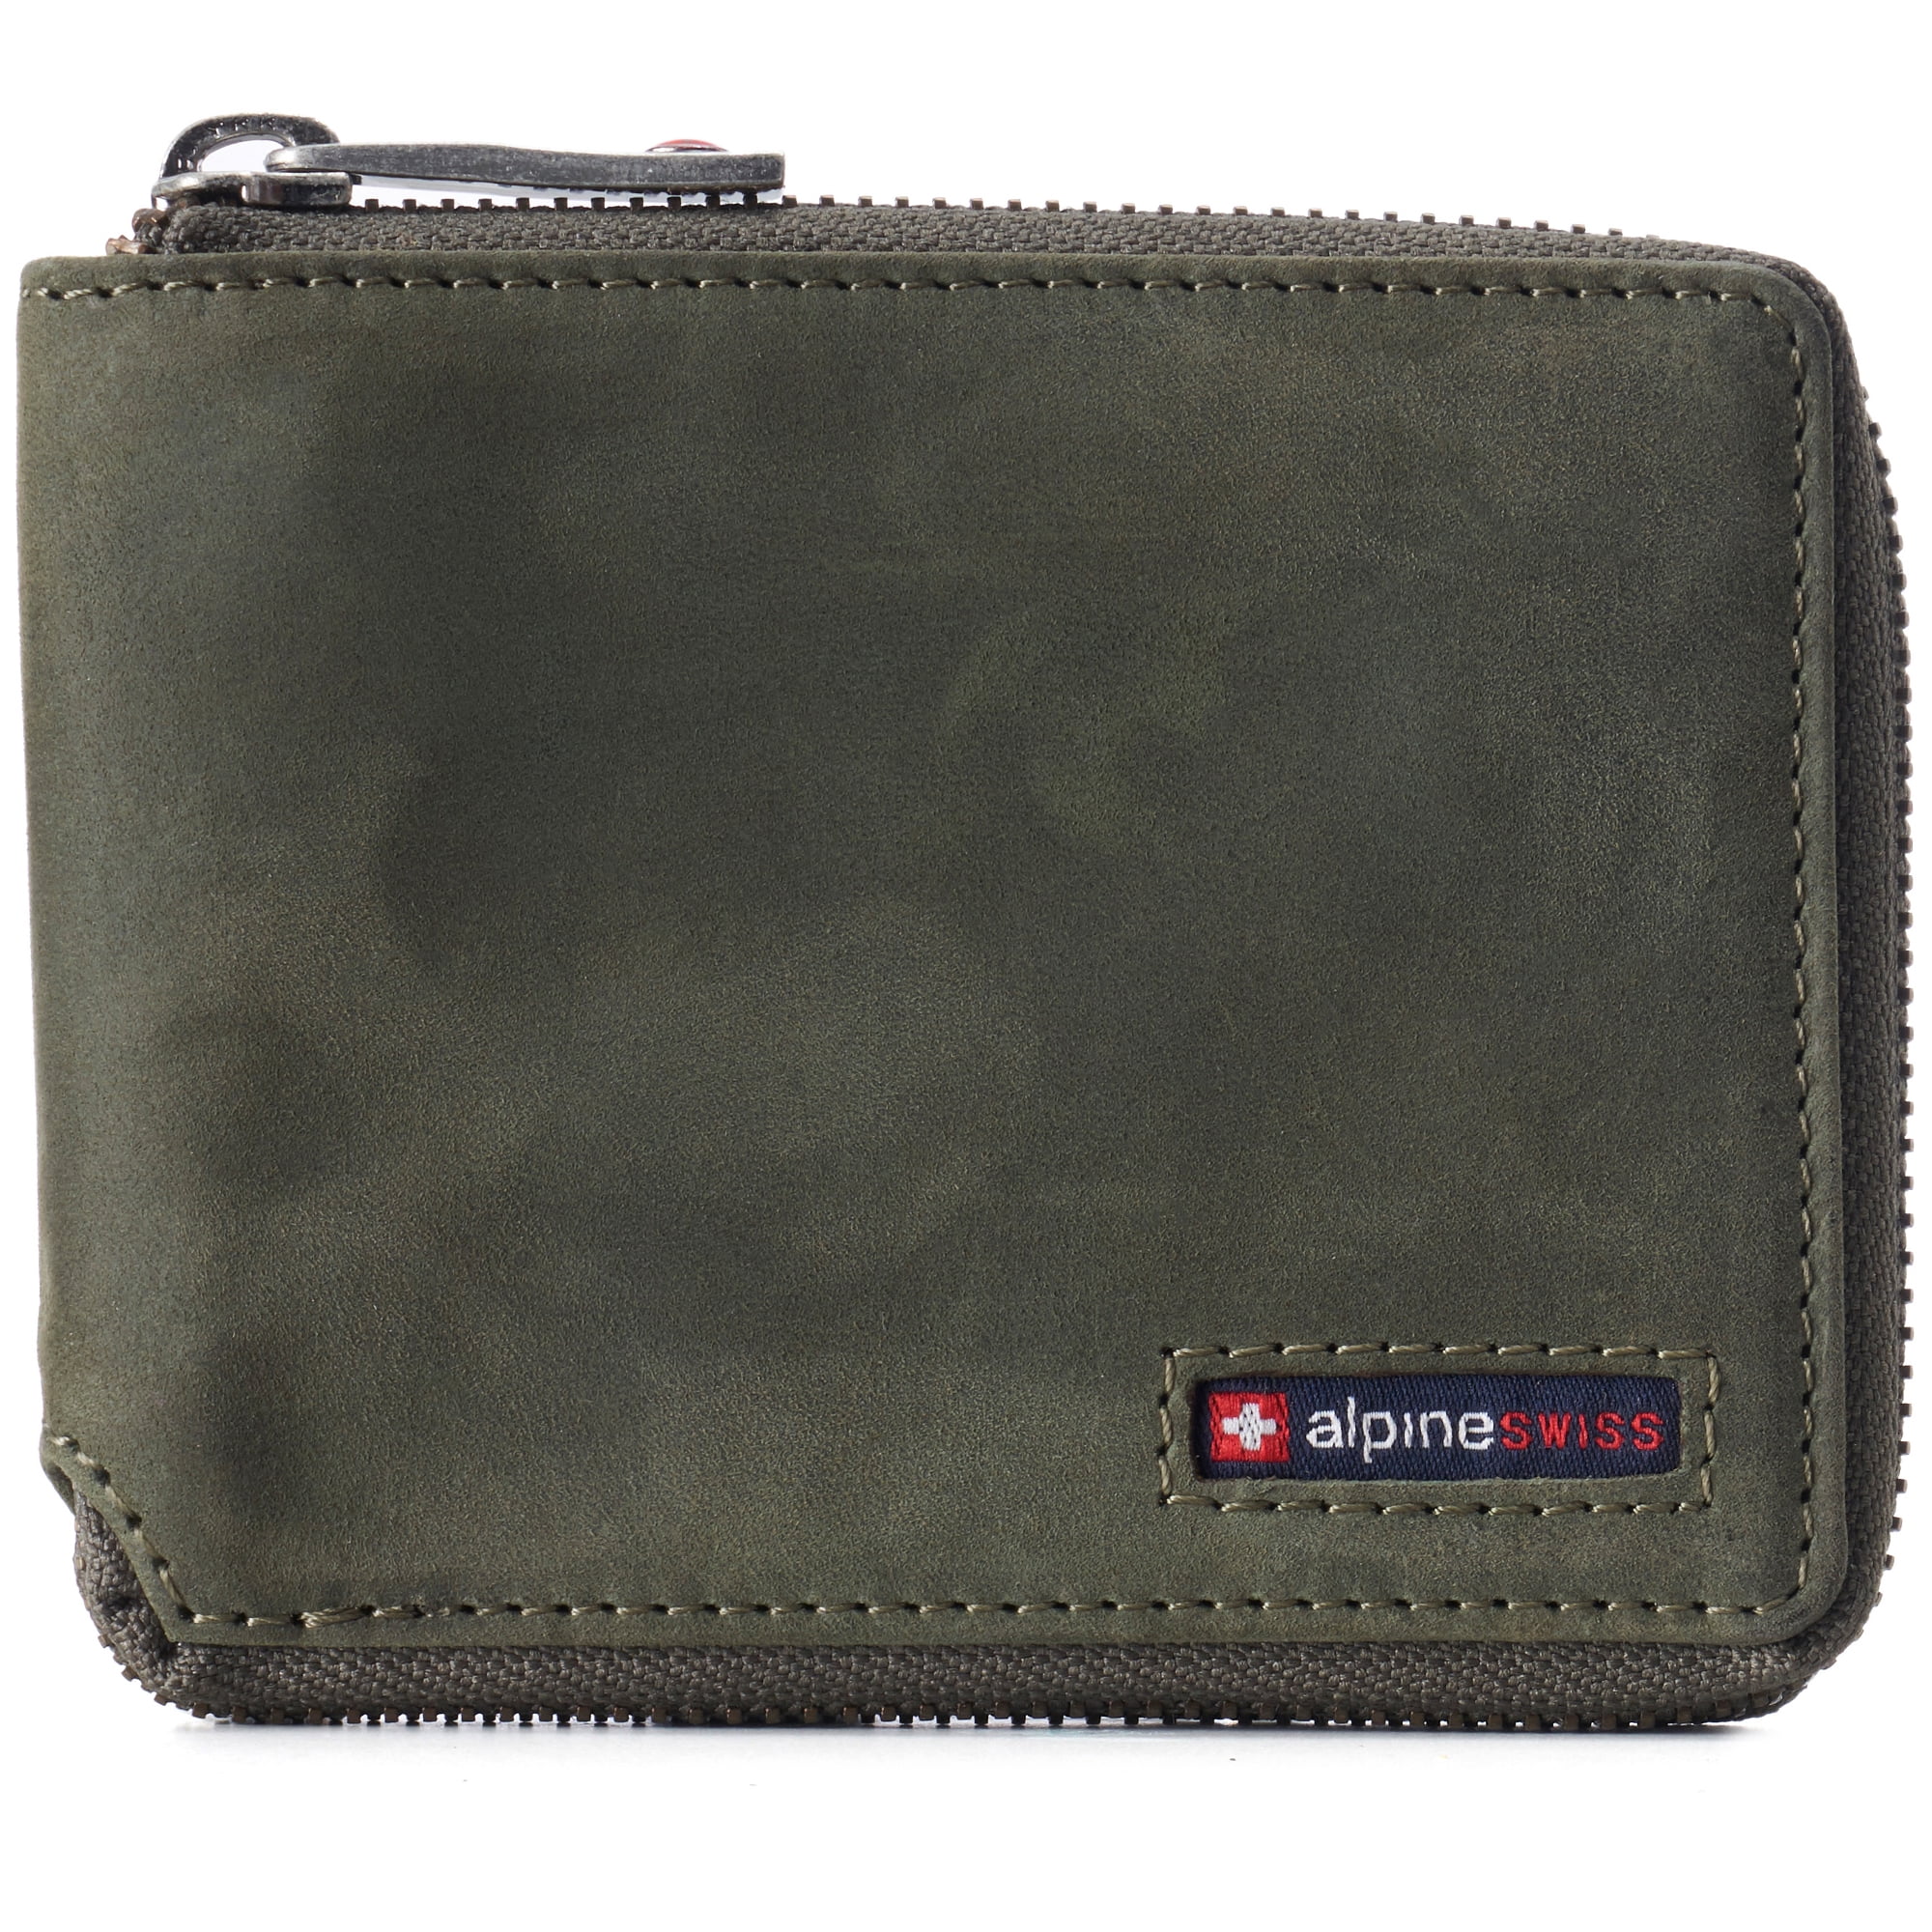 Alpine Swiss - Alpine Swiss Zipper Bifold Wallet for Men Women RFID ...